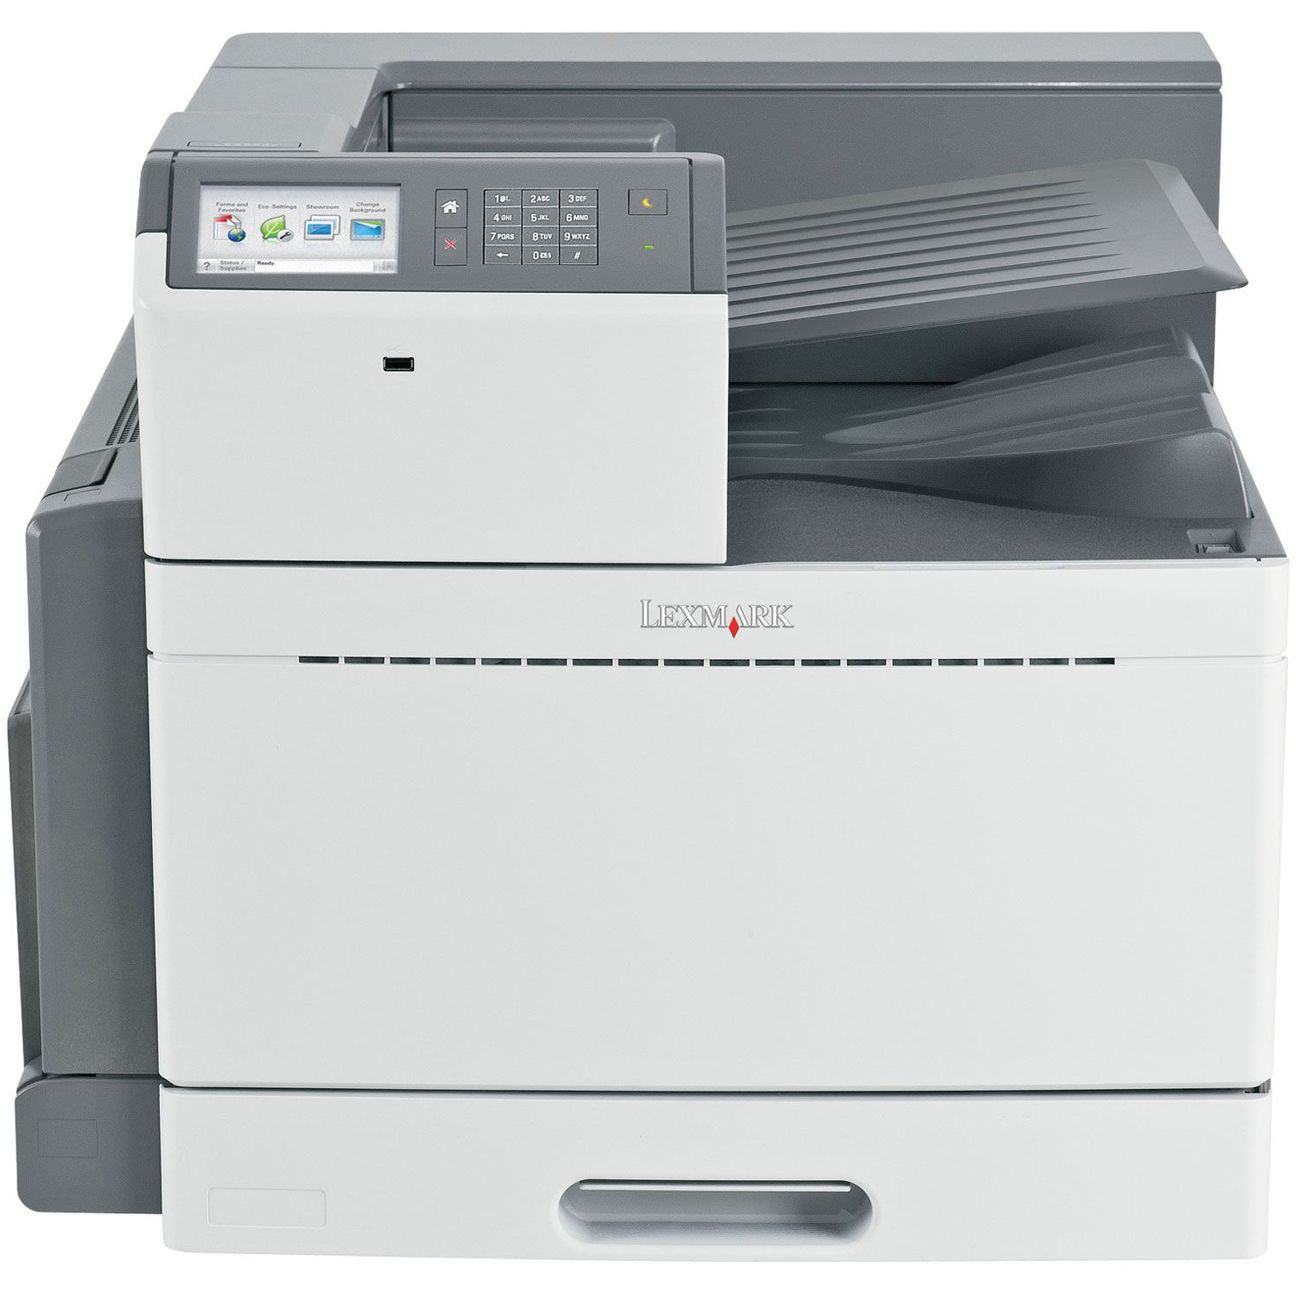  Imprimanta laser color Lexmark C950DE, A3 